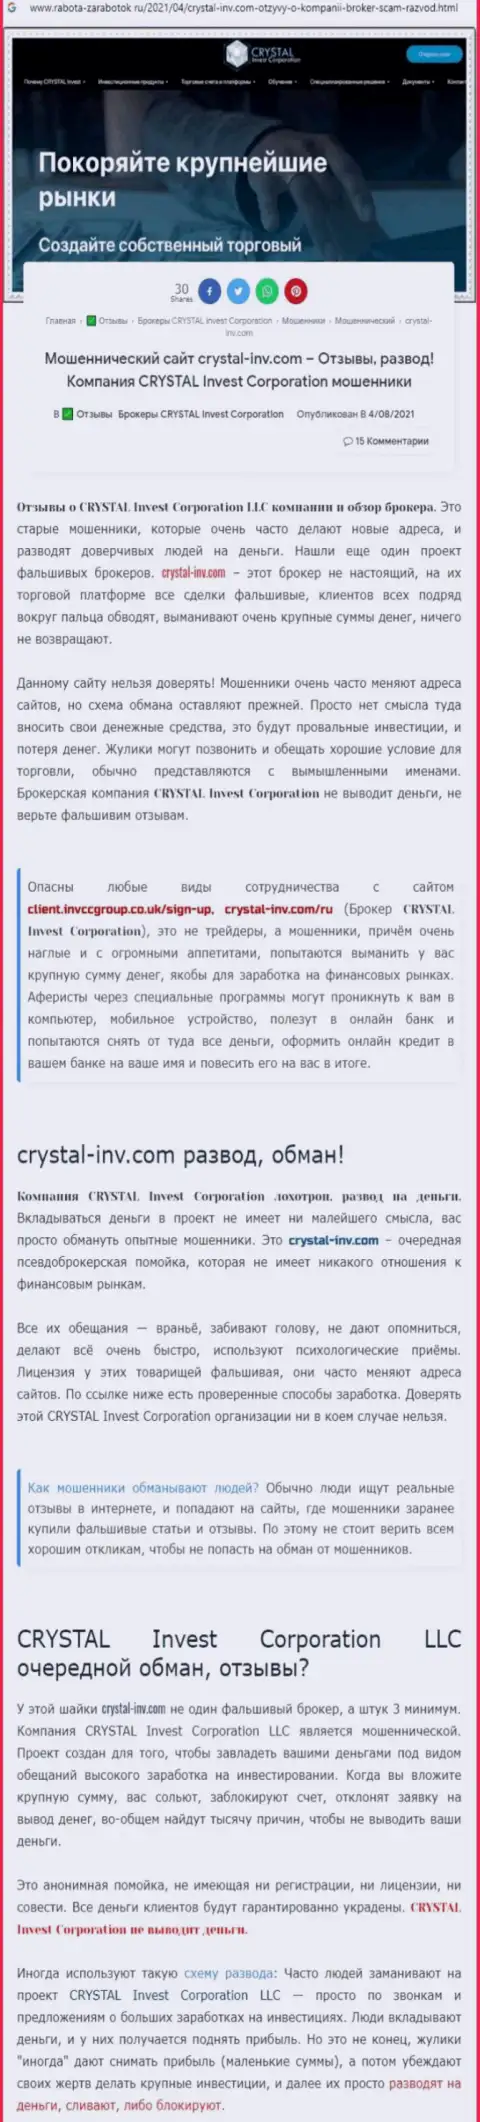 Материал, выводящий на чистую воду организацию Crystal Invest, который позаимствован с веб-сервиса с обзорами мошеннических действий различных контор